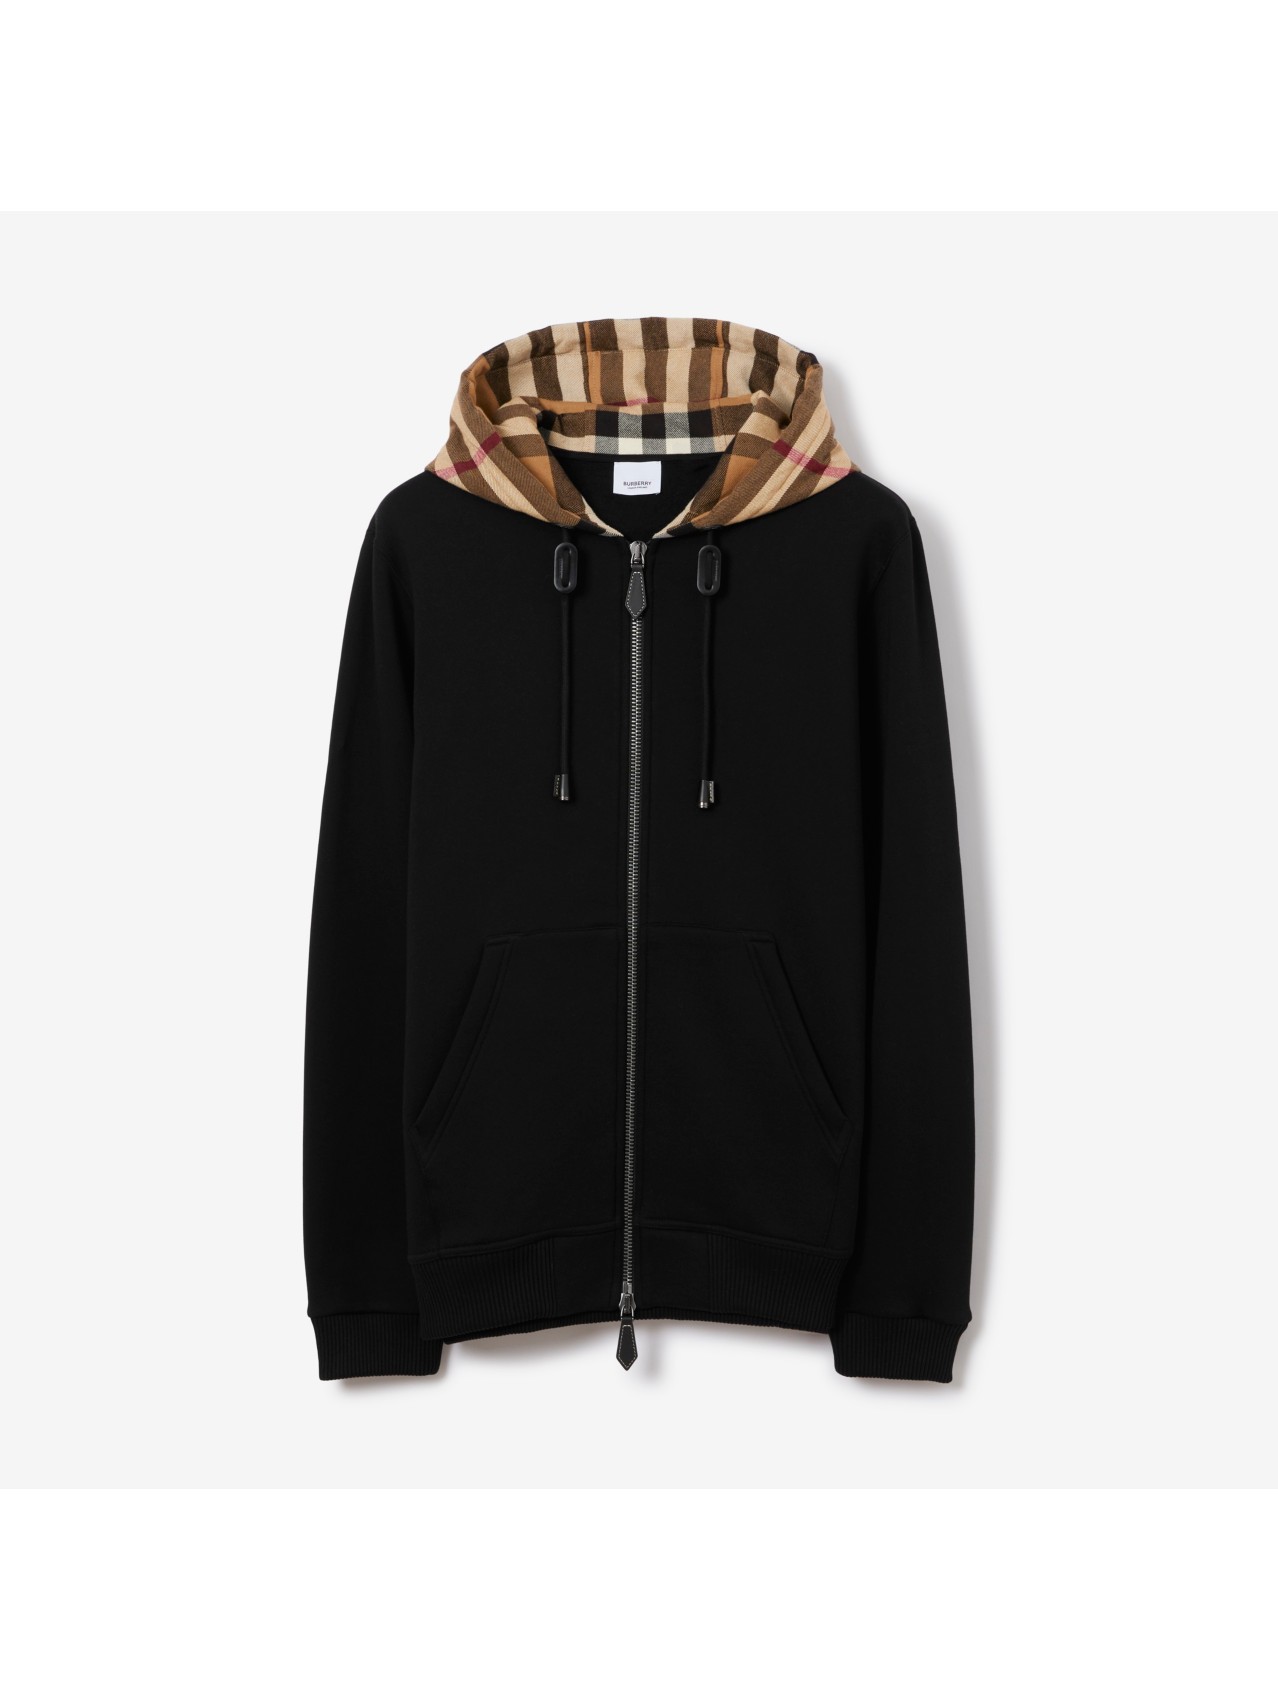 Actualizar 41+ imagen burberry hoodies for men